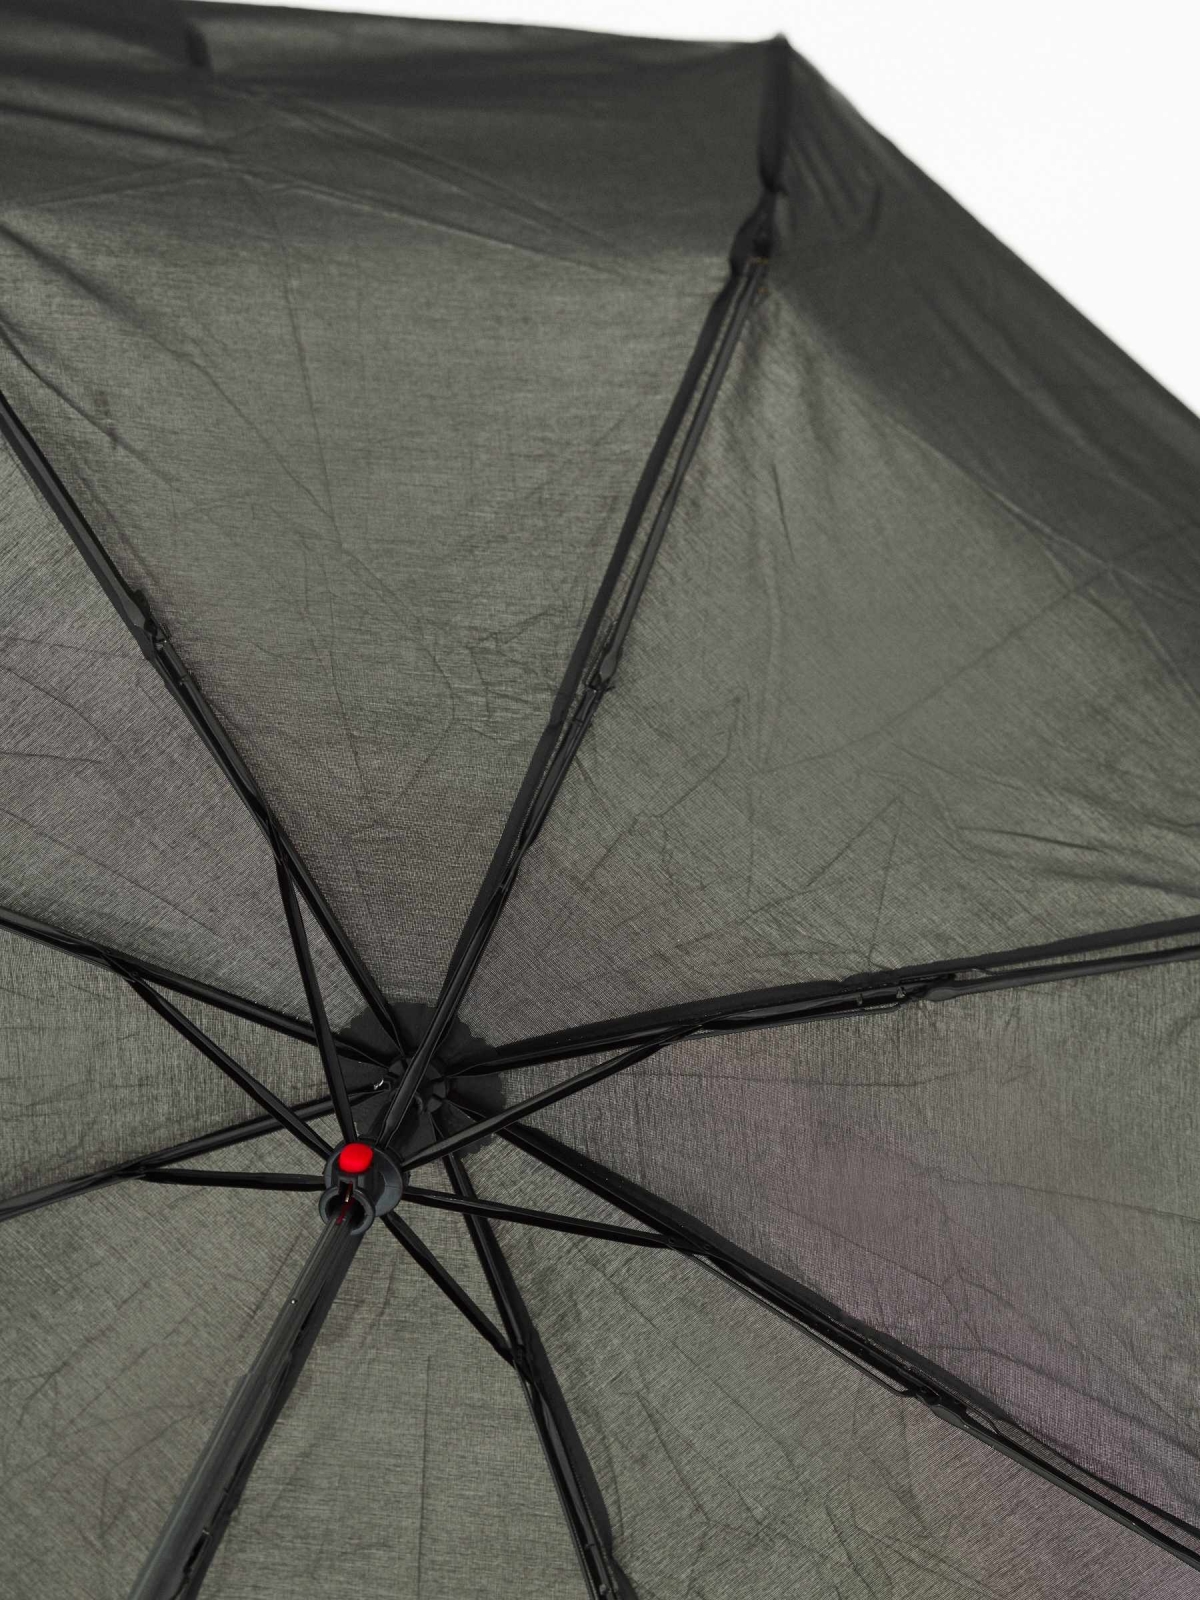 Guarda-chuva dobrável preto vista meia curta